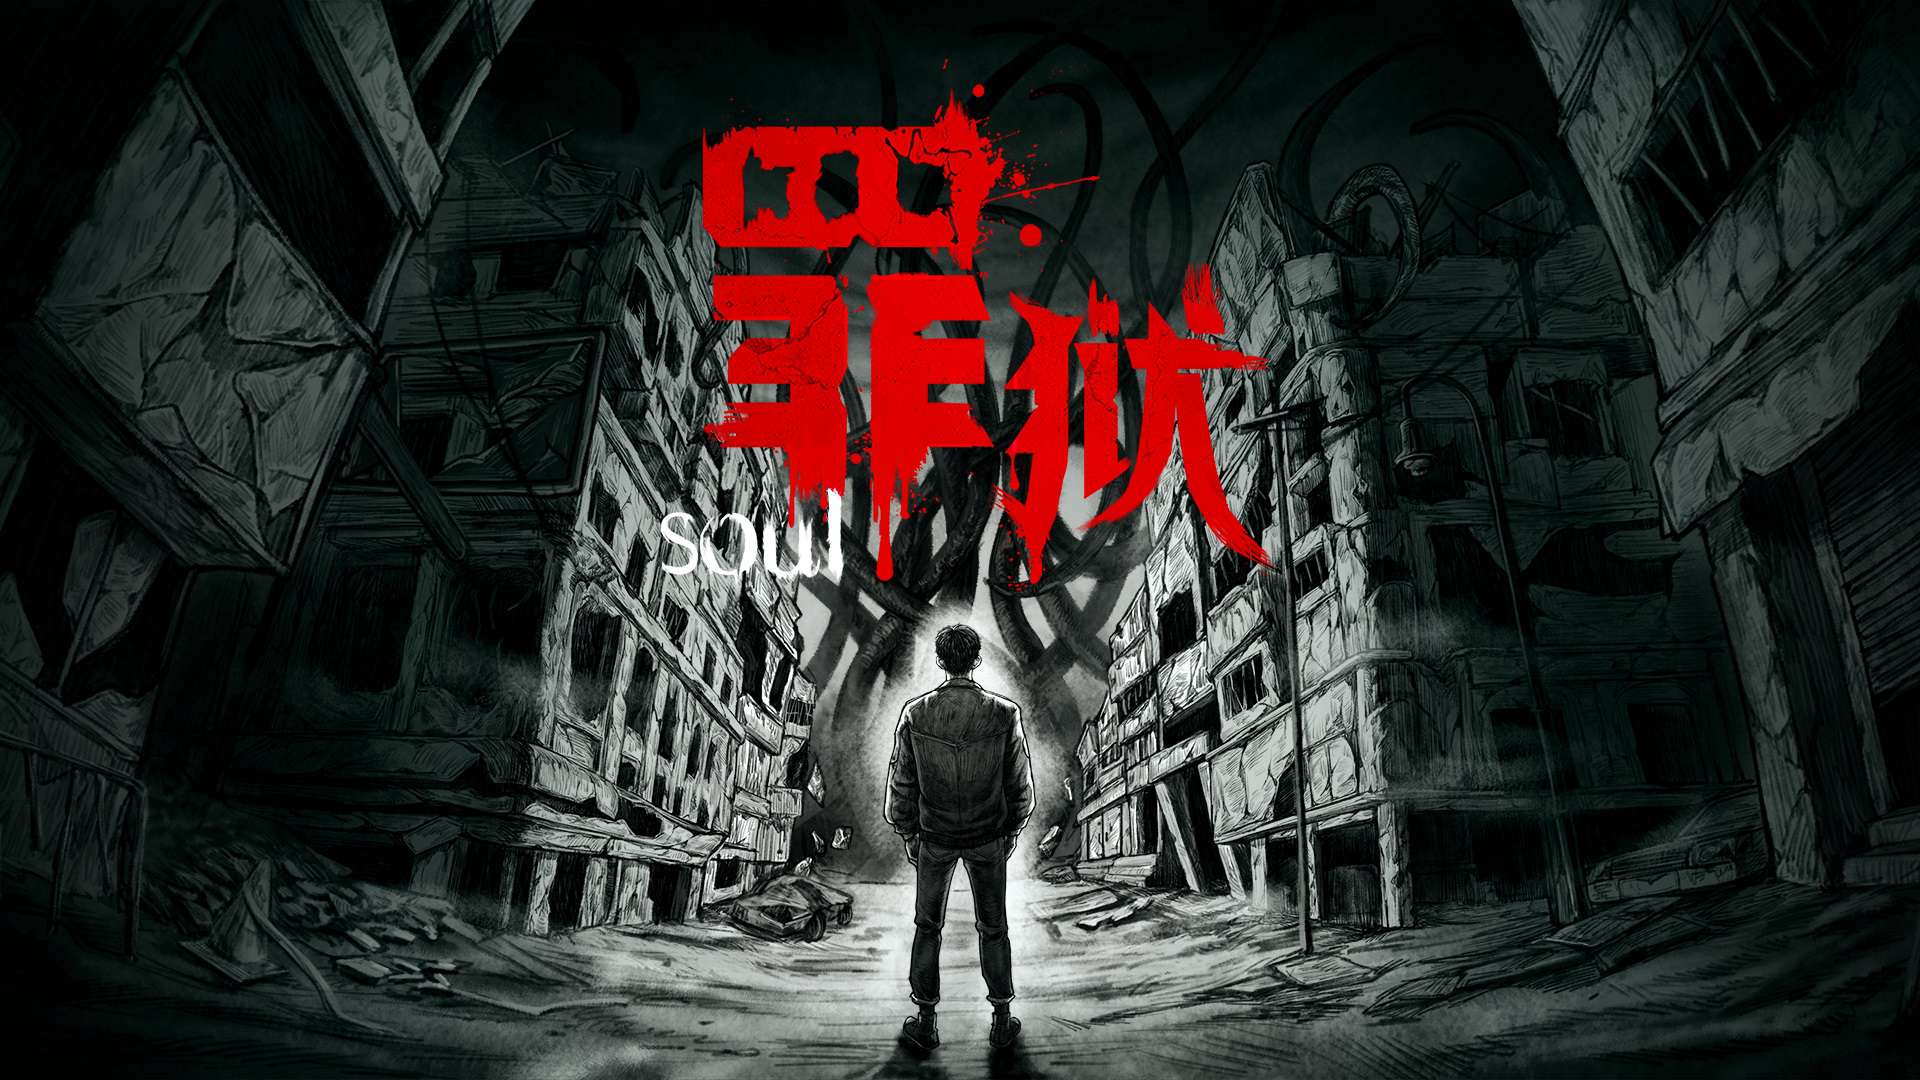 驚悚風視覺小說遊戲《罪獄soul》公佈新截圖 將於7月下旬發售